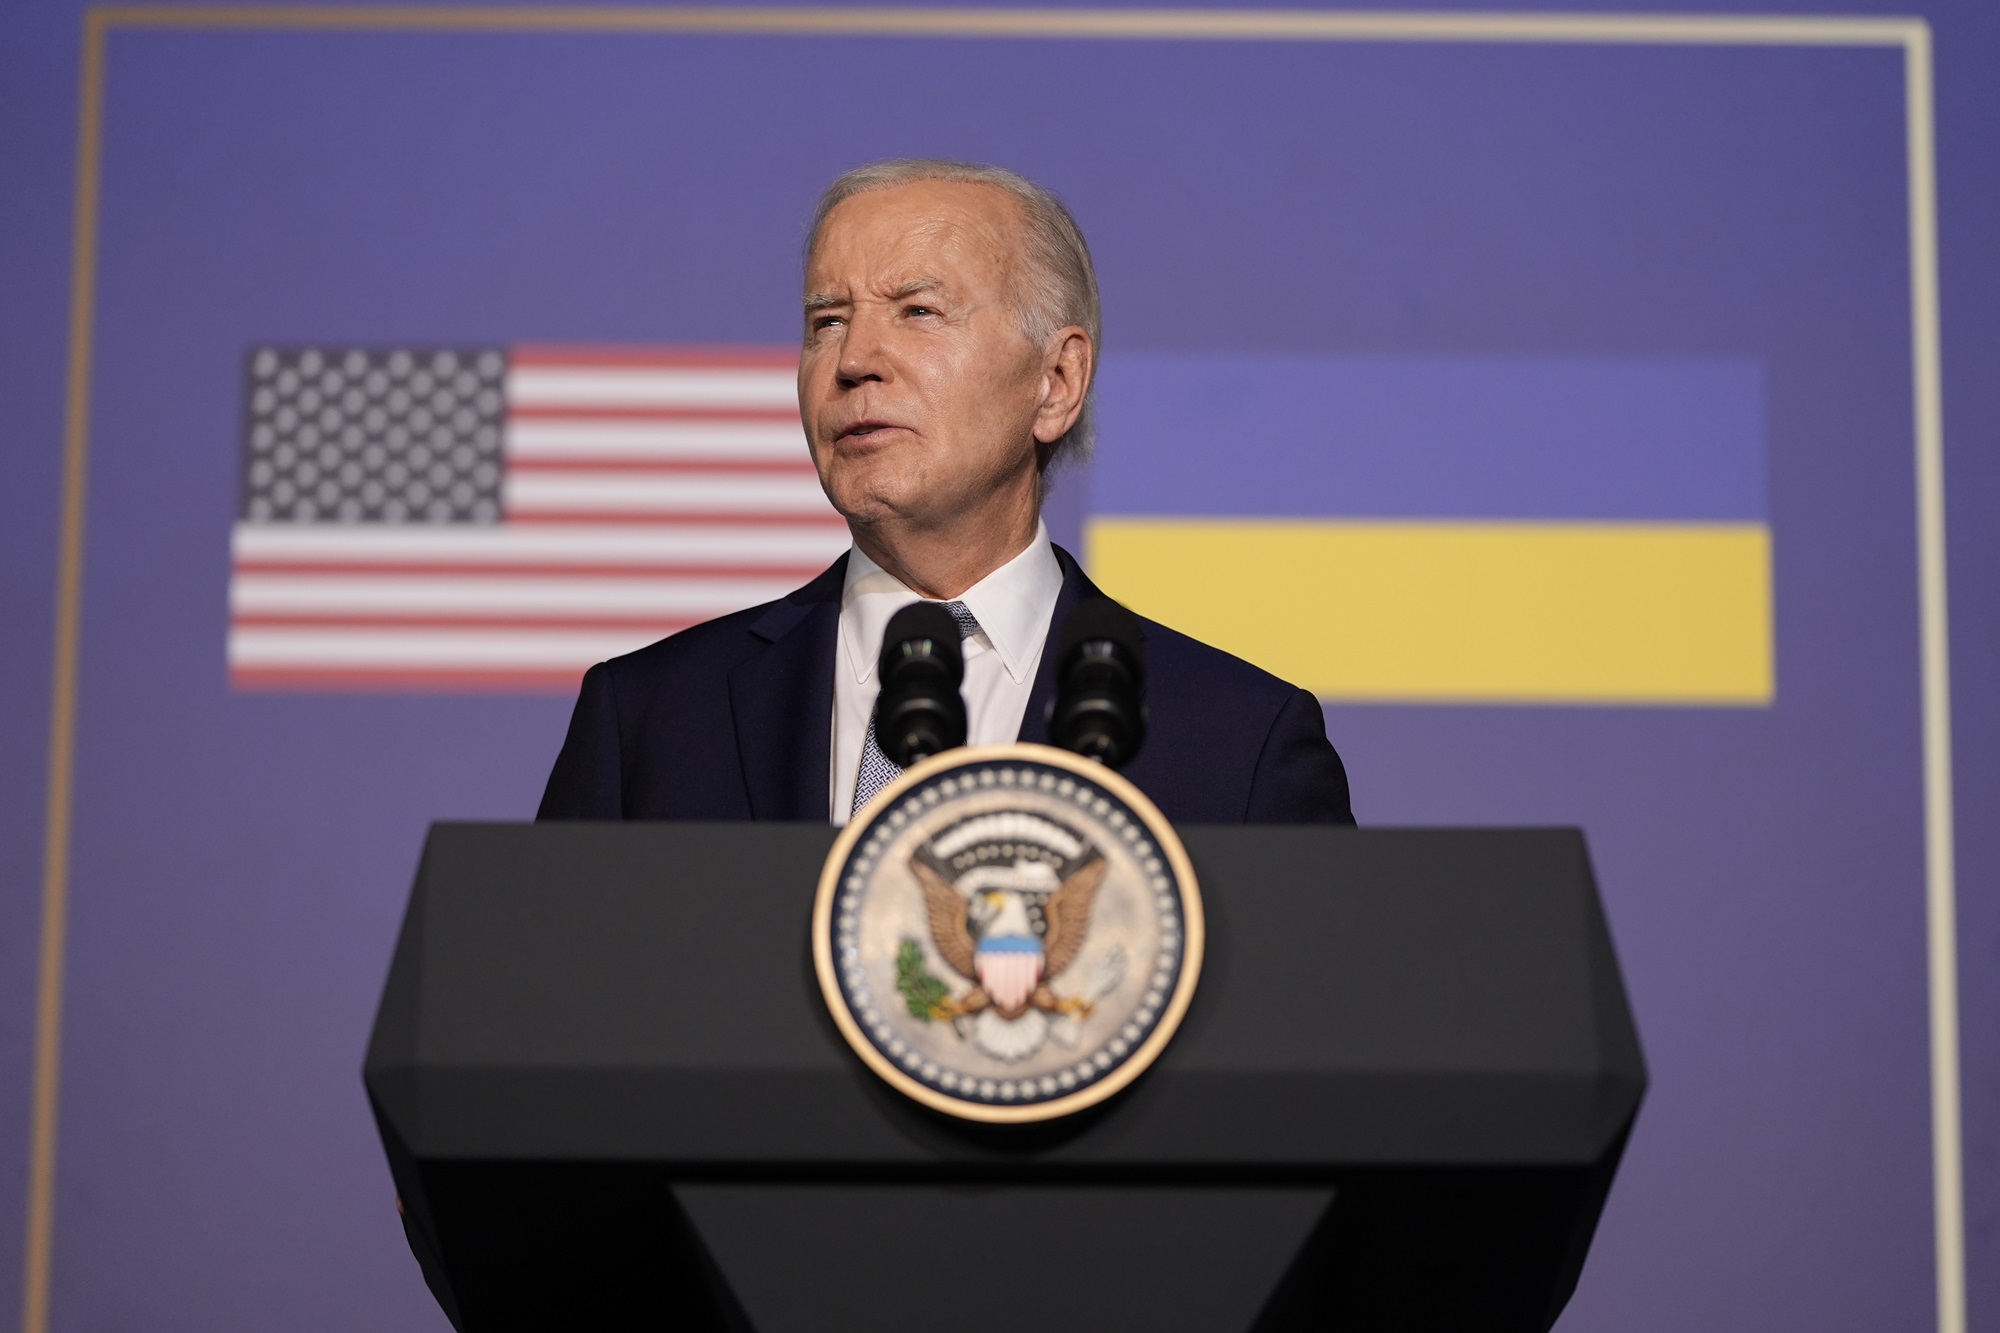 Biden sobre condena de su hijo Hunter Biden: “No lo perdonaré” – La Opinión